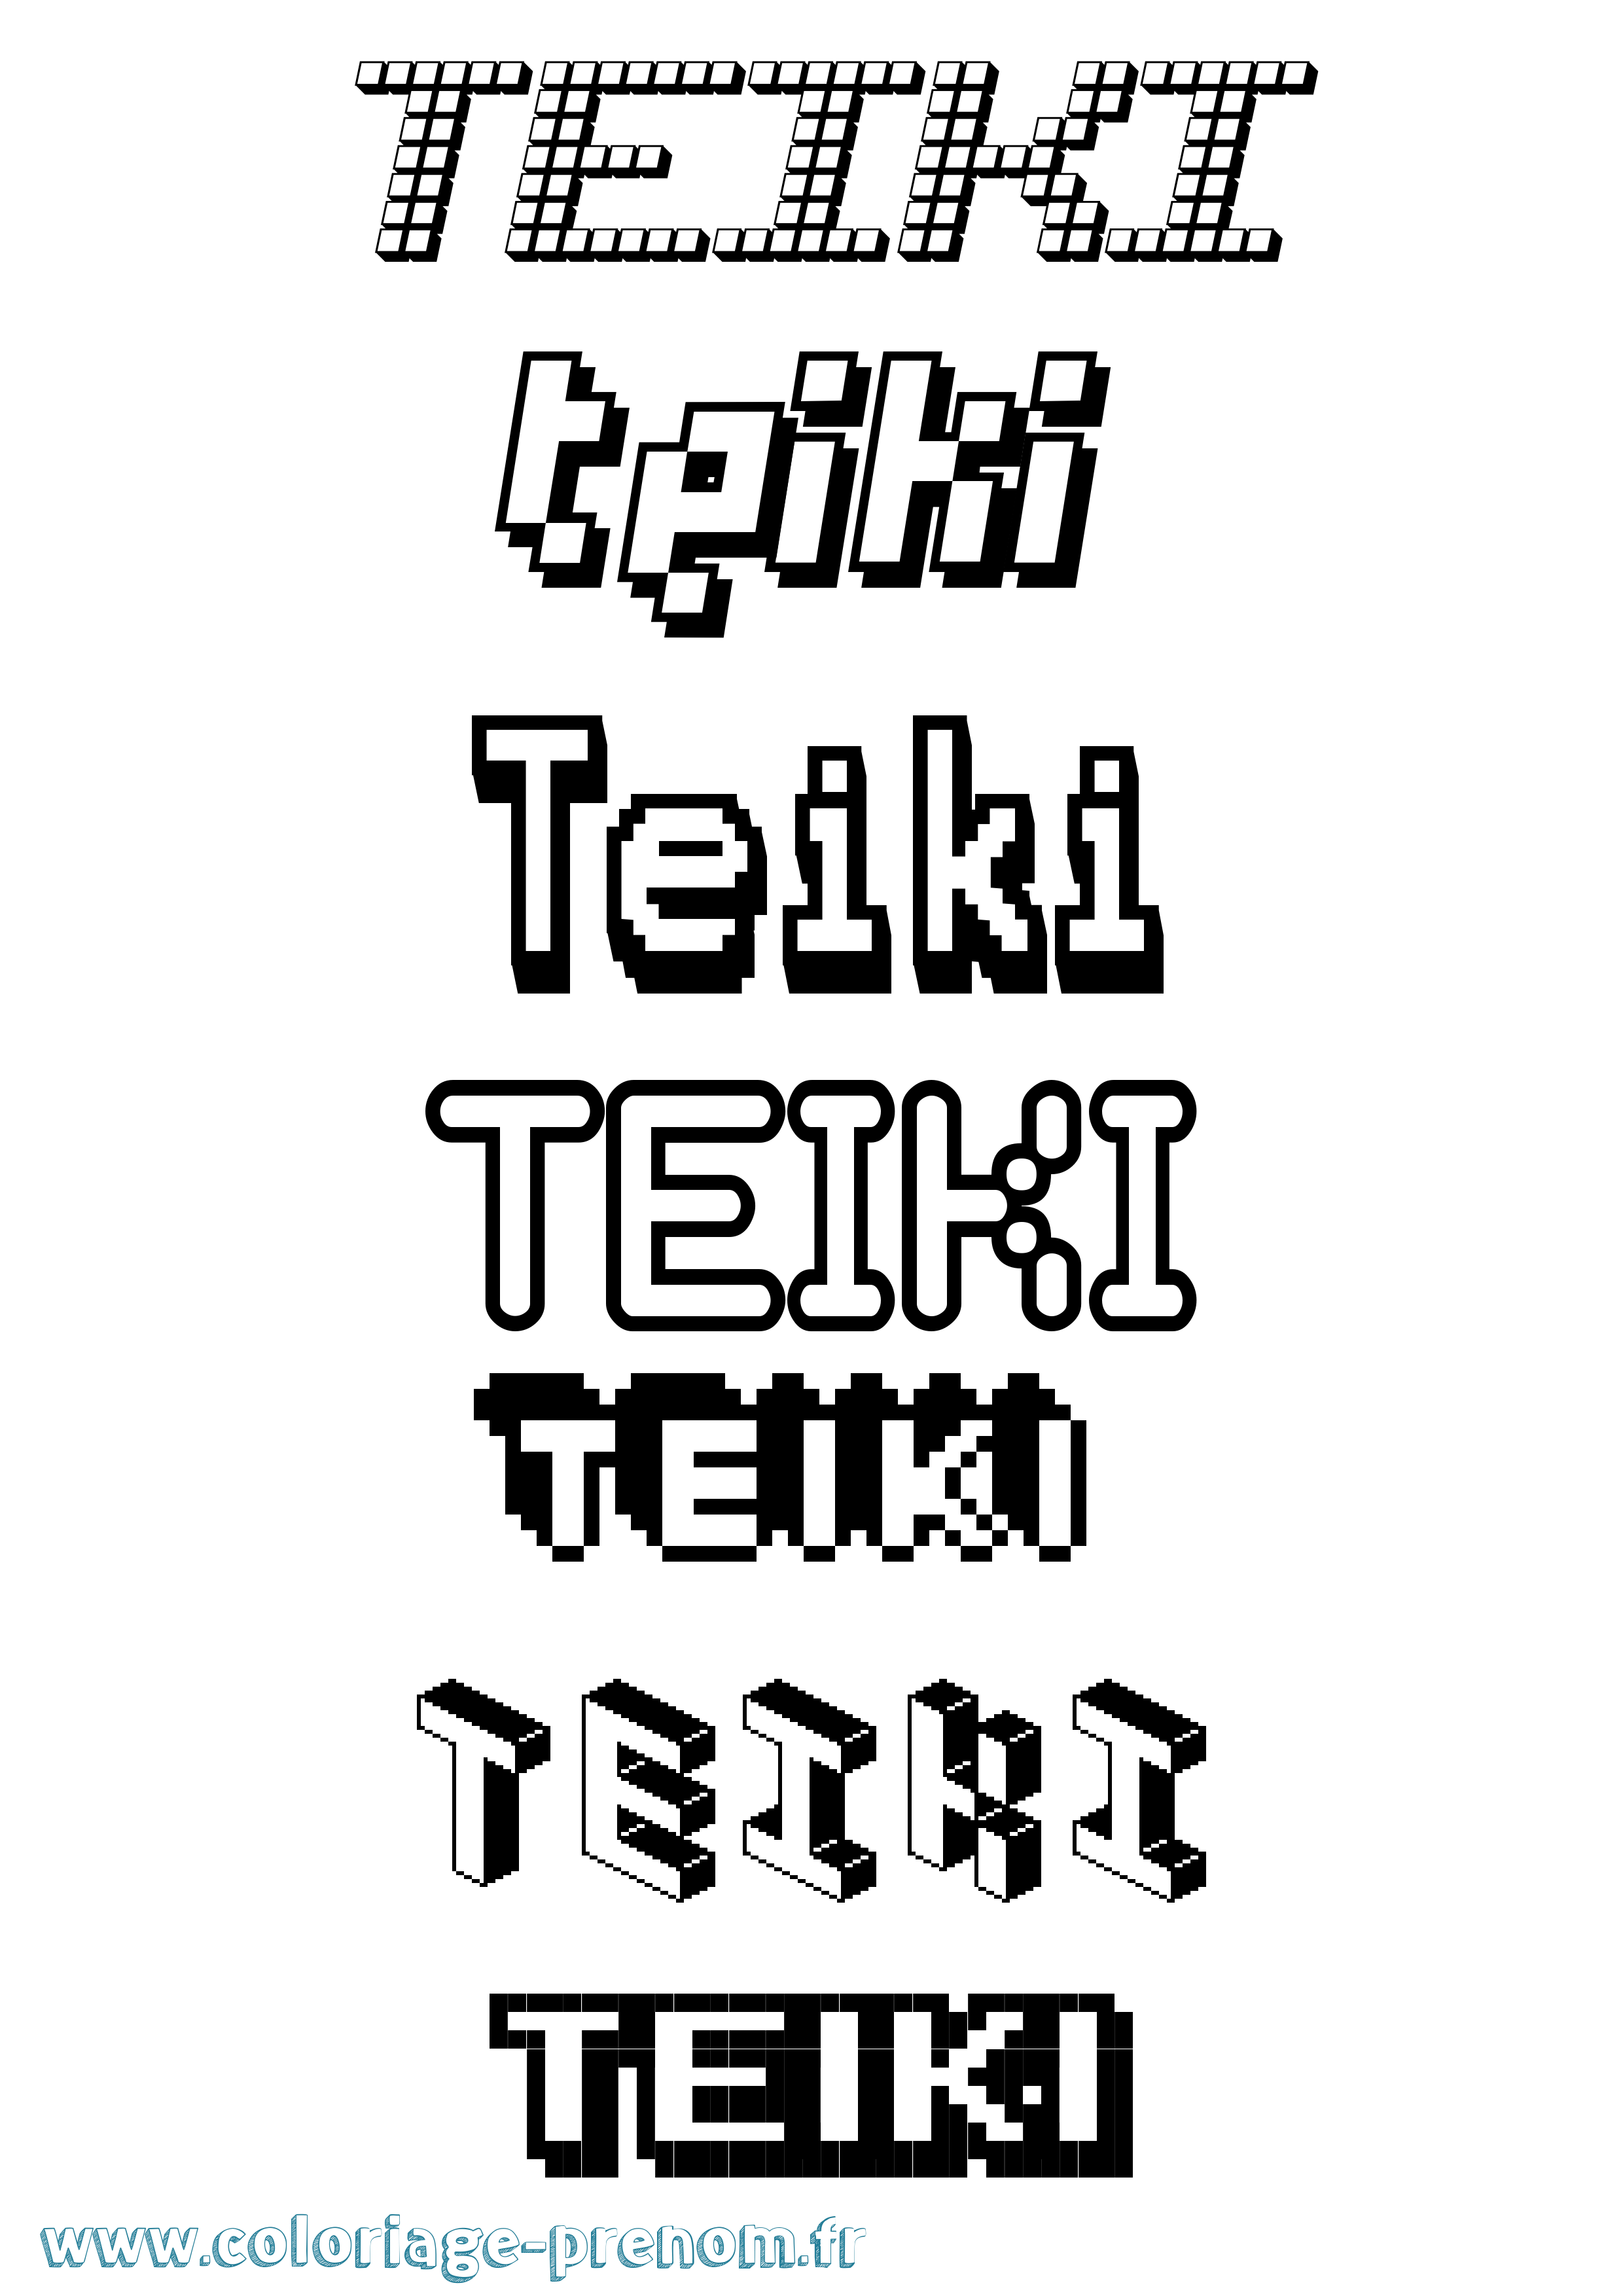 Coloriage prénom Teiki Pixel